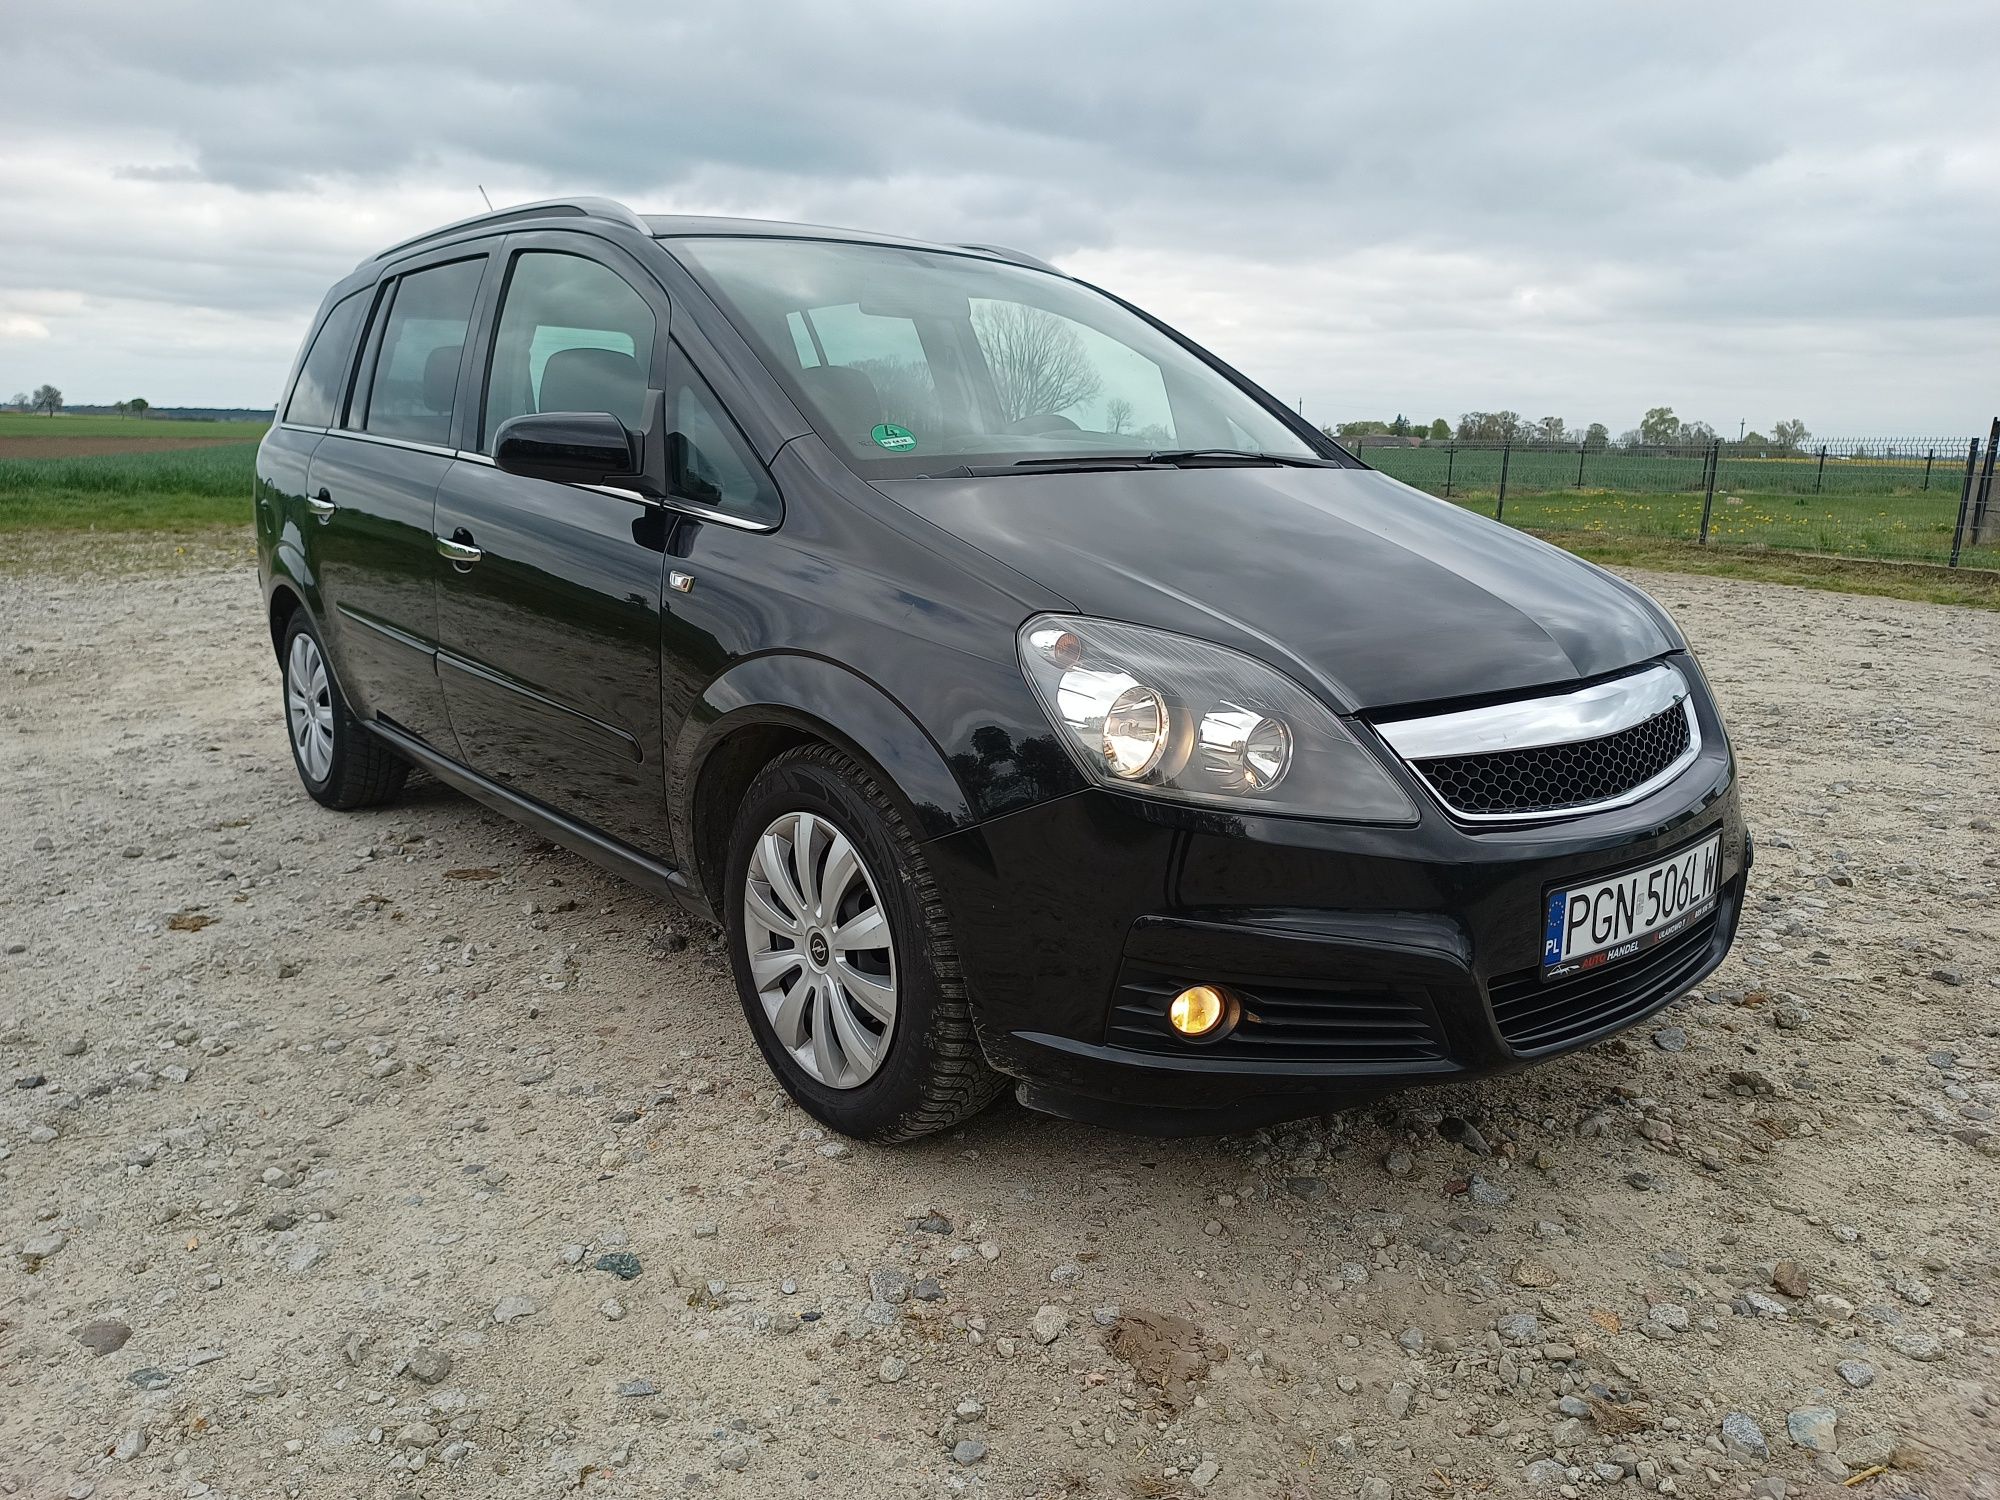 Opel Zafira 2007 rok 1.8 benzyna świeżo Zarejstrowana